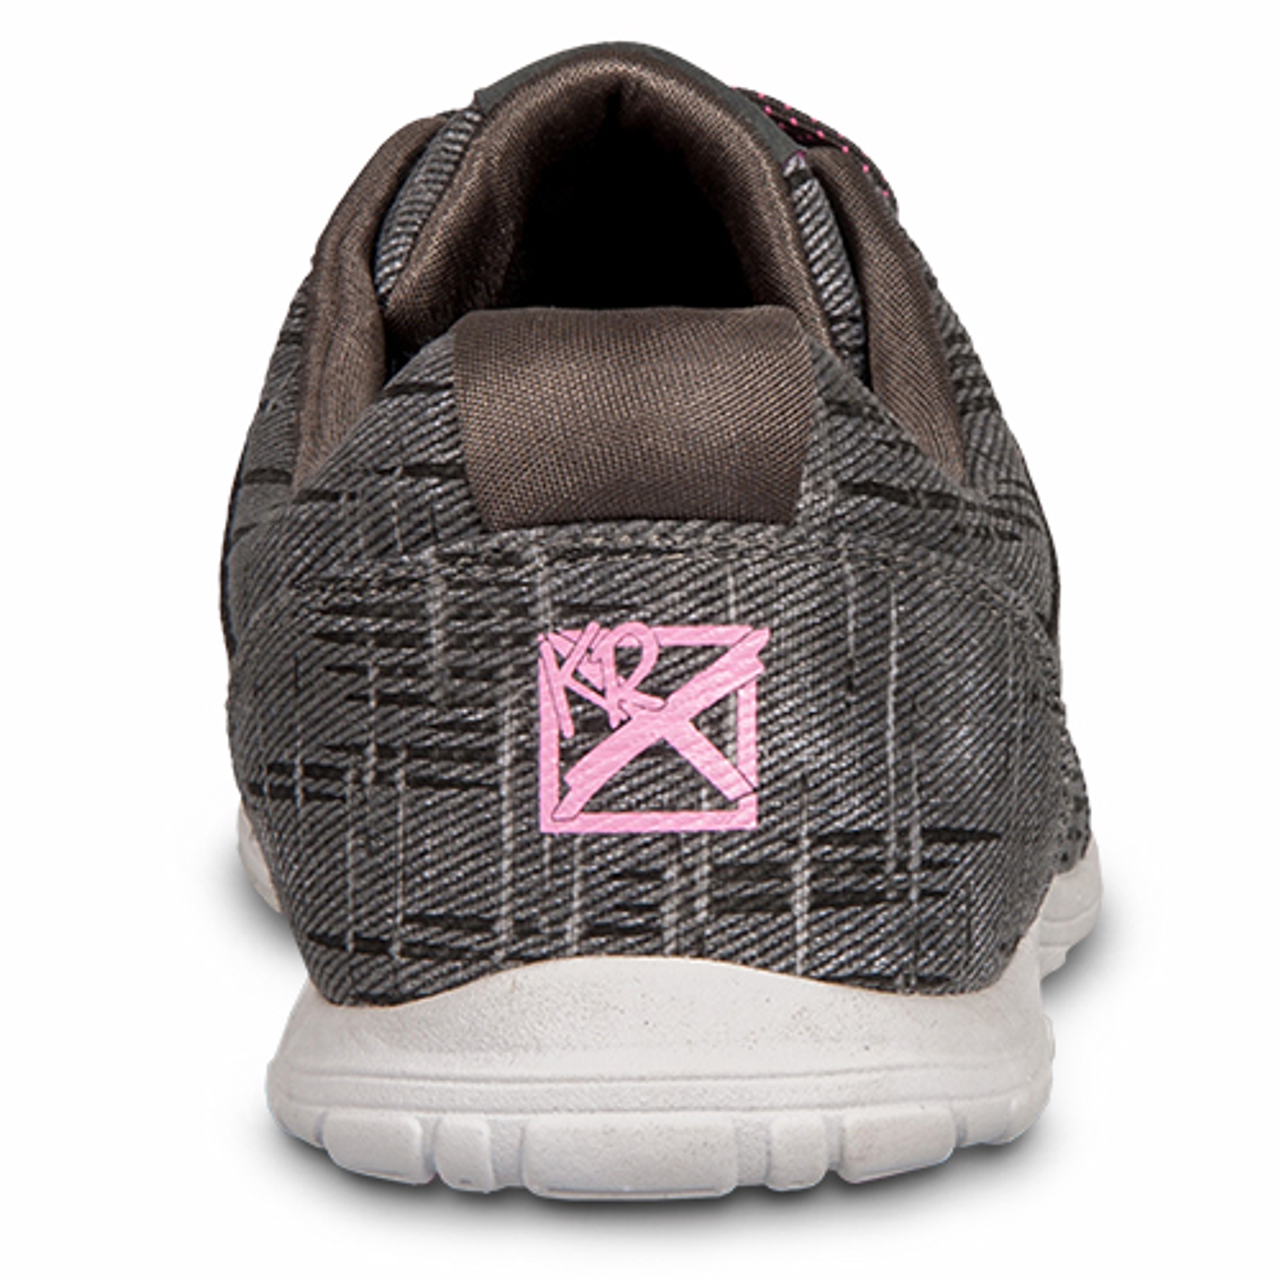 KR Strikeforce Womens Nova Lite Bowling Shoes Ash/Hot Pink